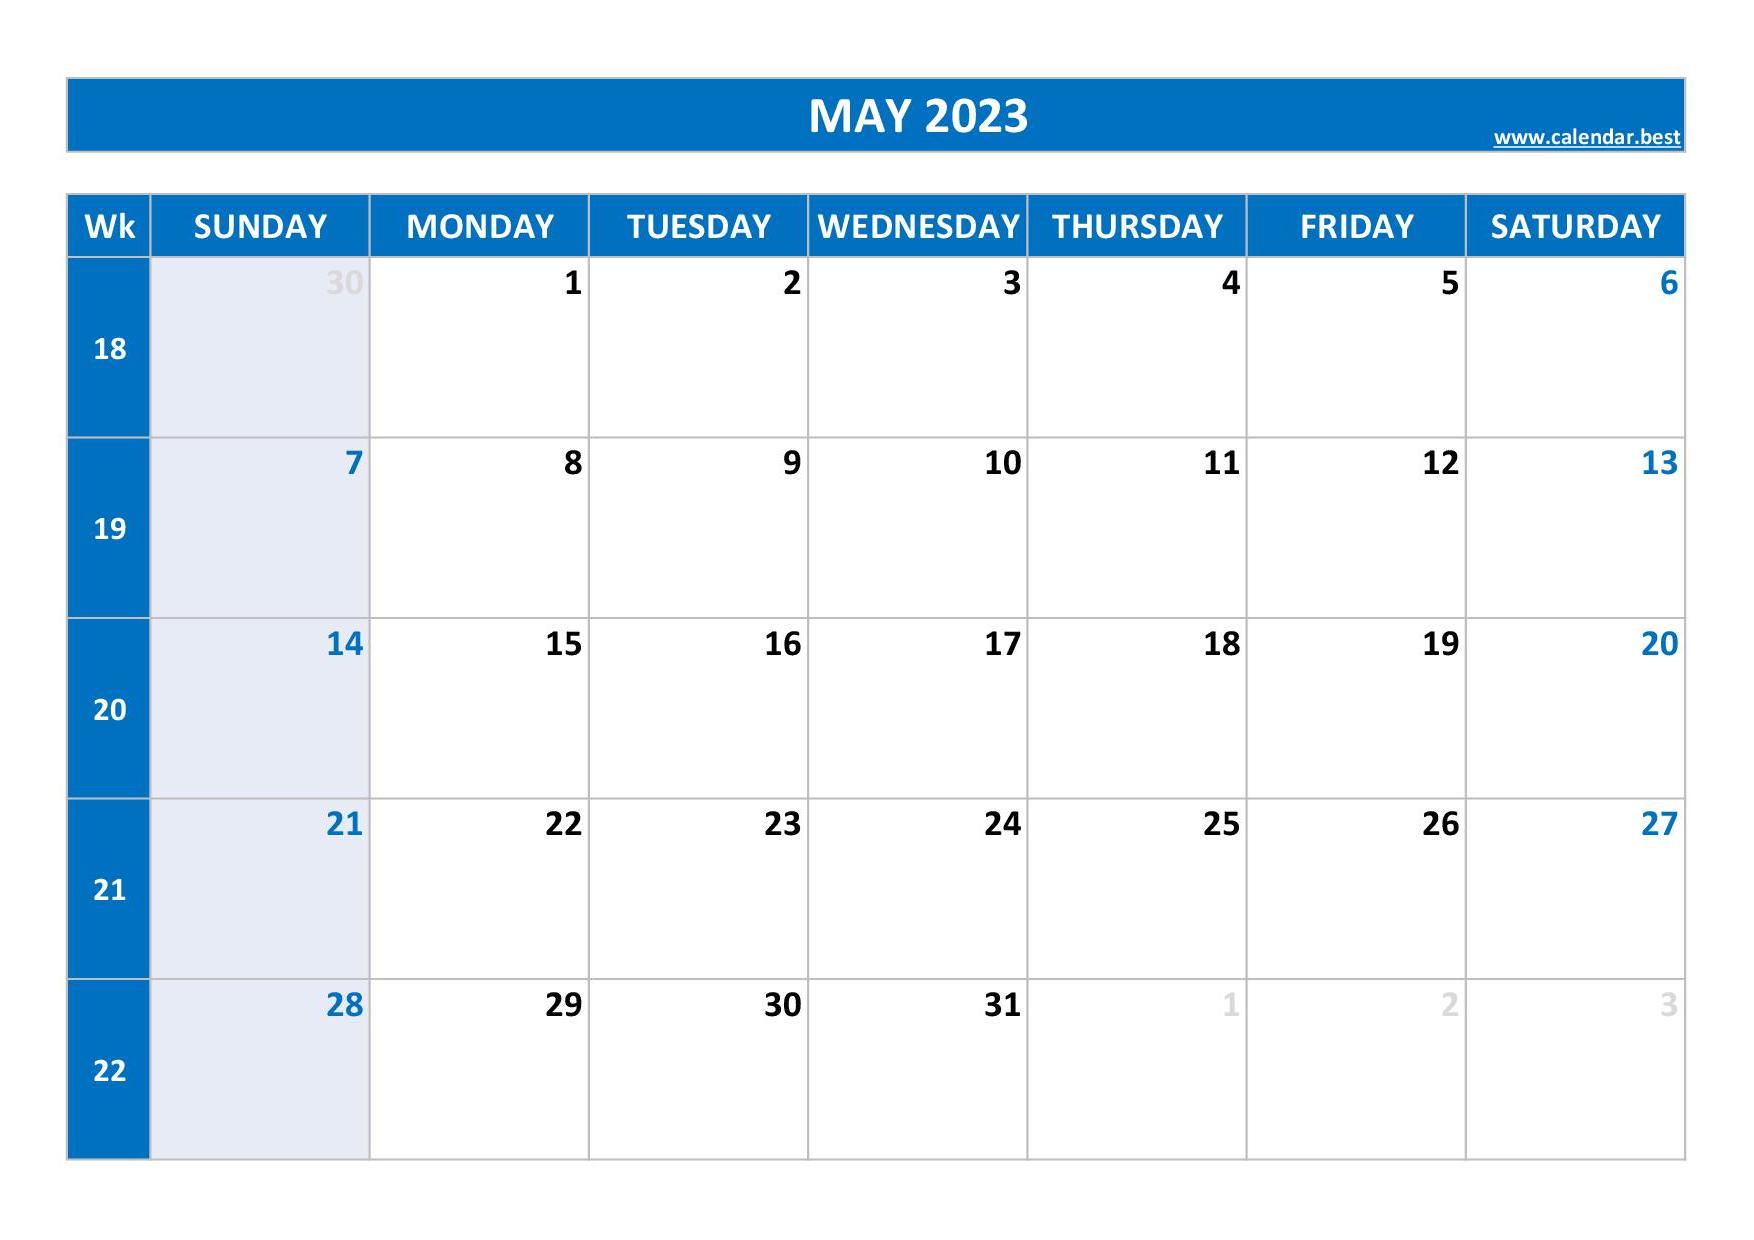 May 2023 Calendar Week Get Calendar 2023 Update